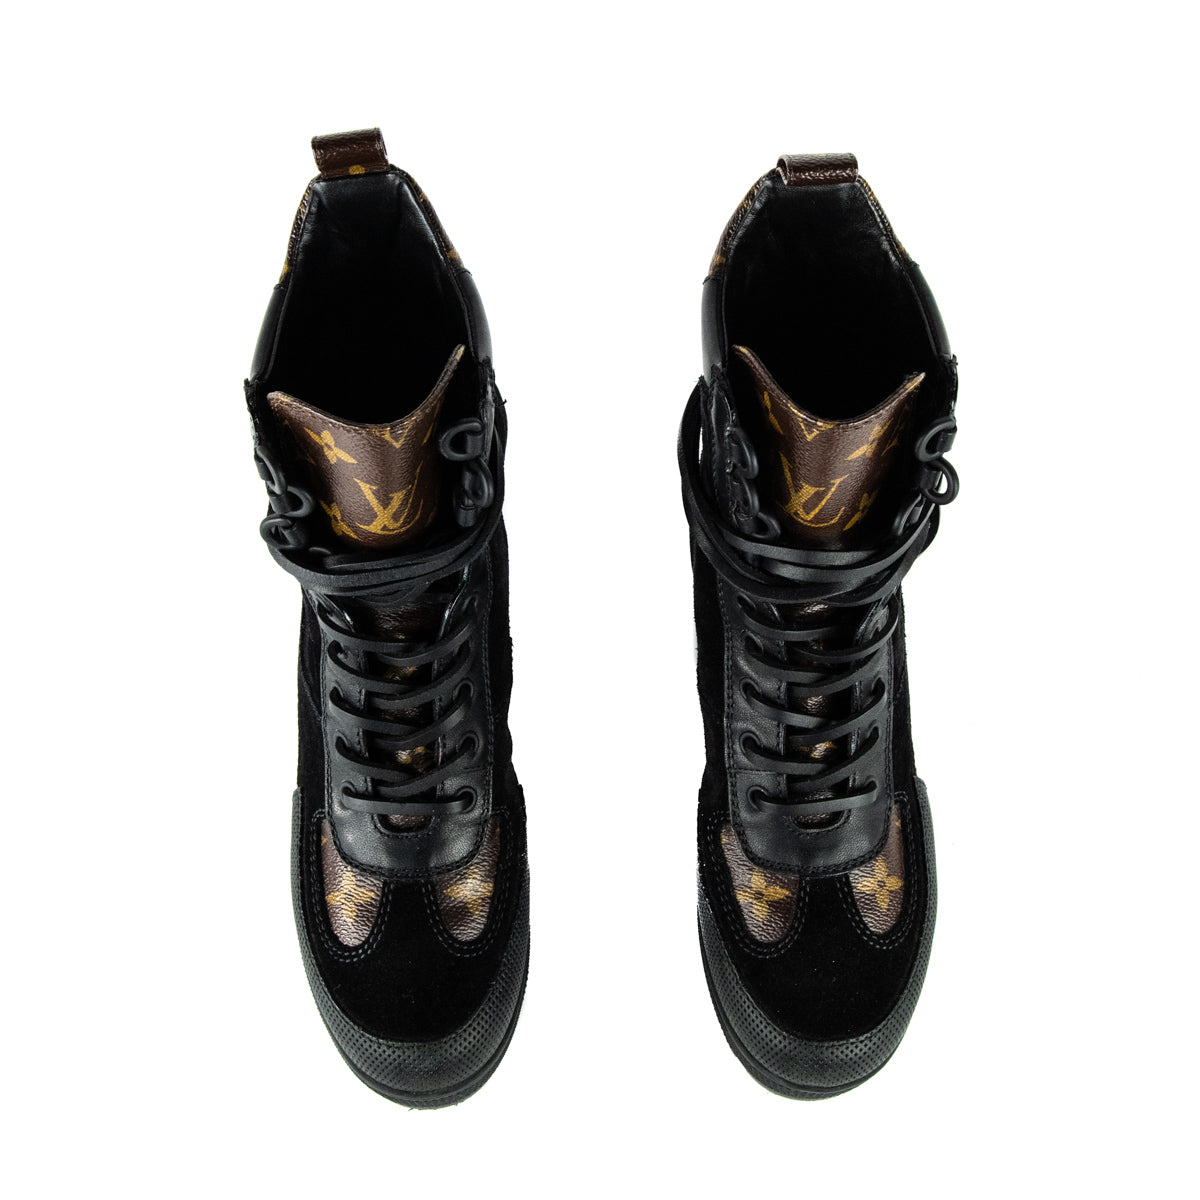 Louis Vuitton Monogram Suede Chelsea Boots - ShopStyle